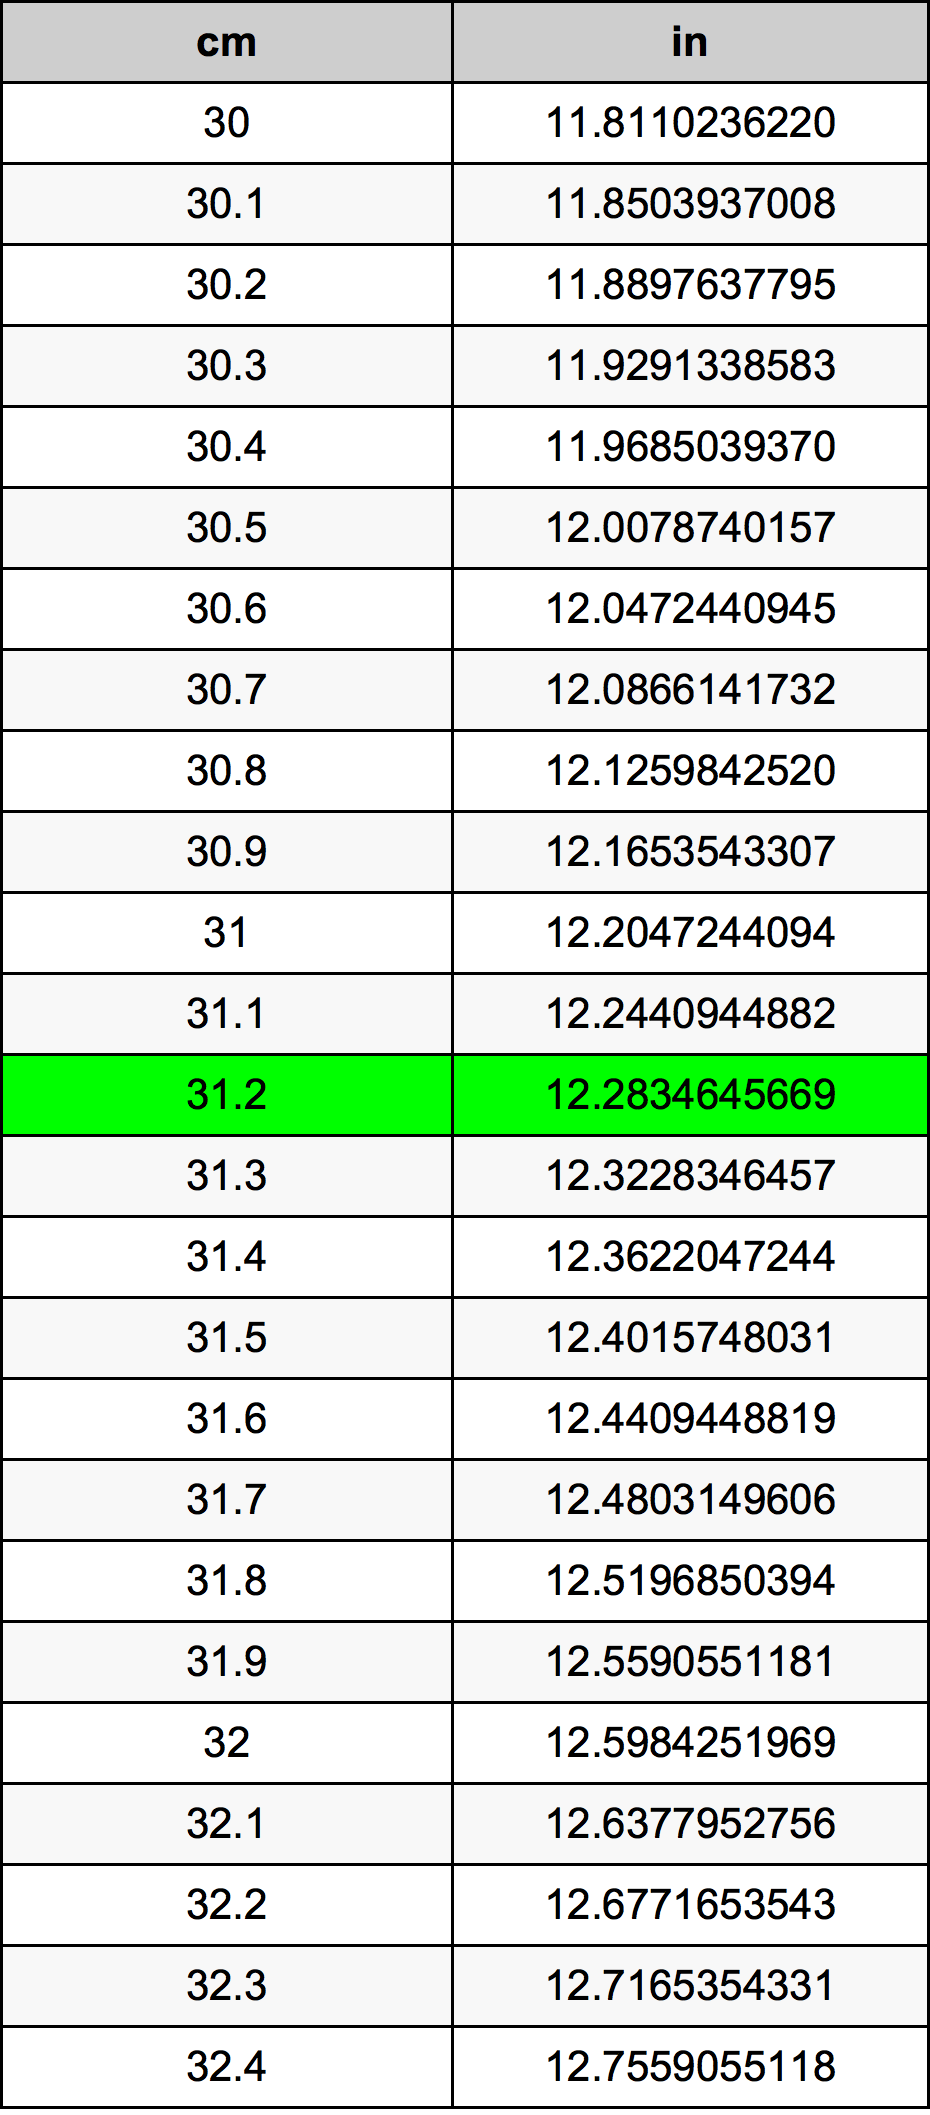 31.2 Centiméter átszámítási táblázat